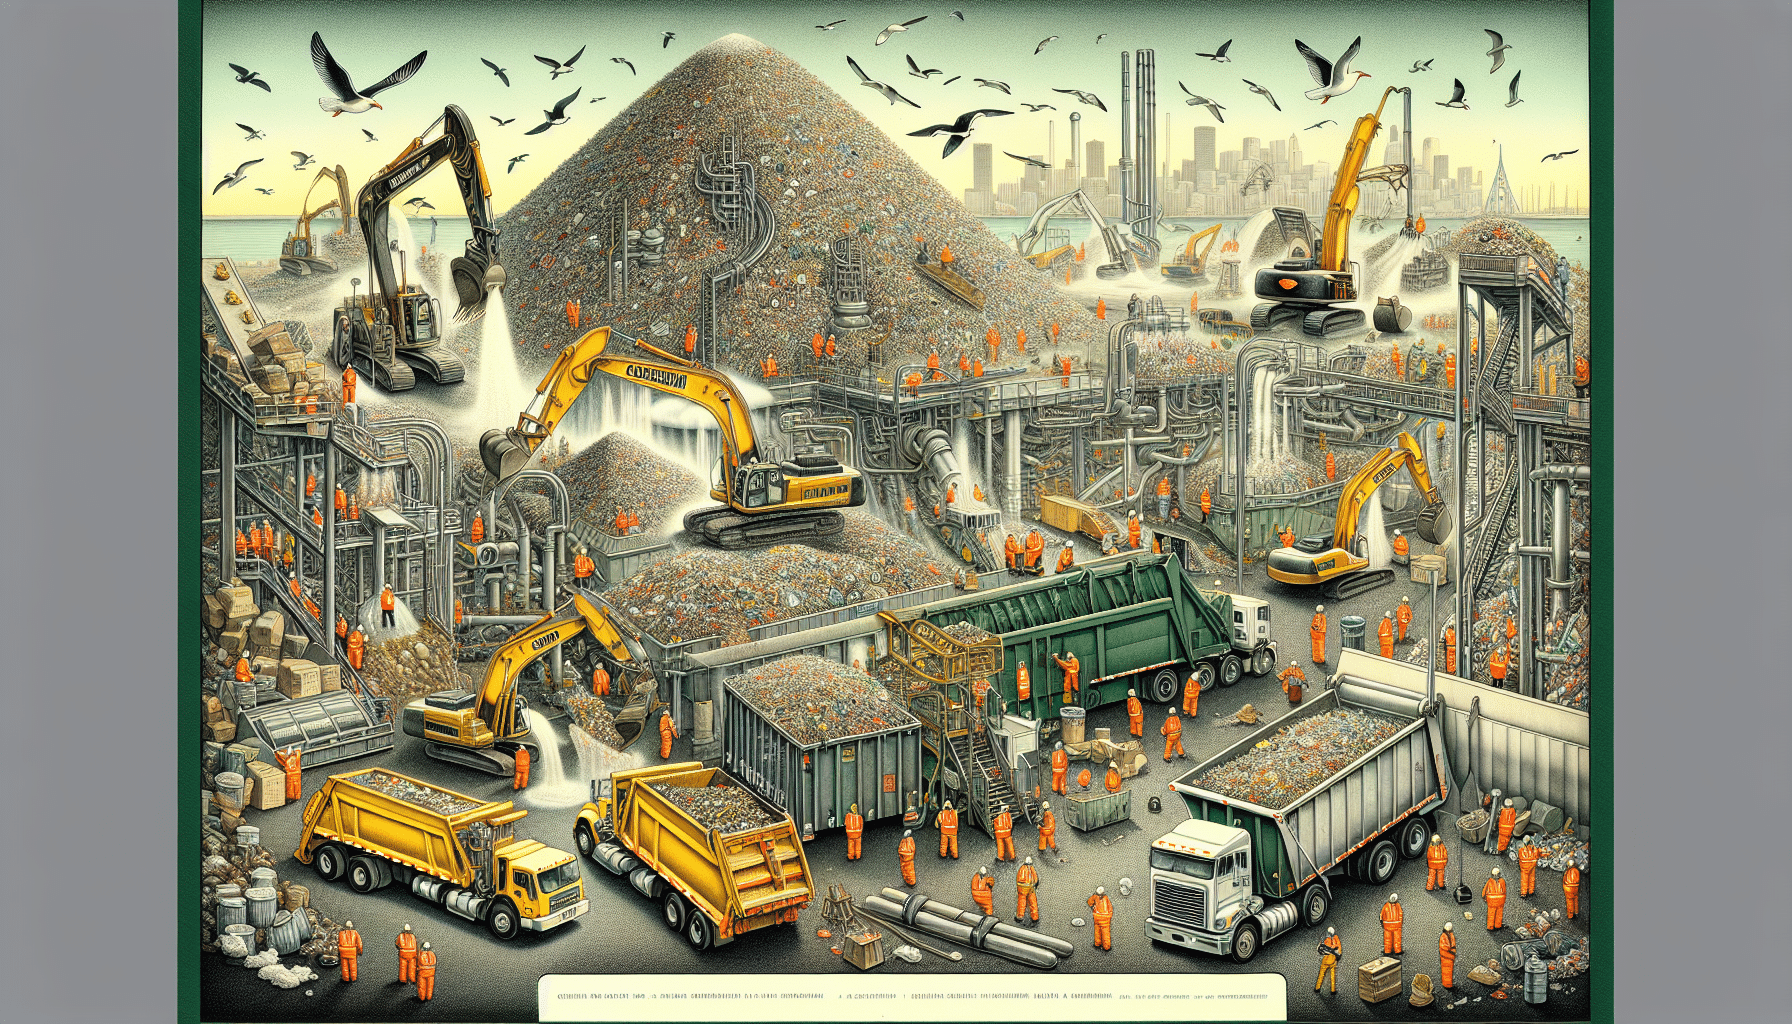 Illustration of landfill operations in Oakland